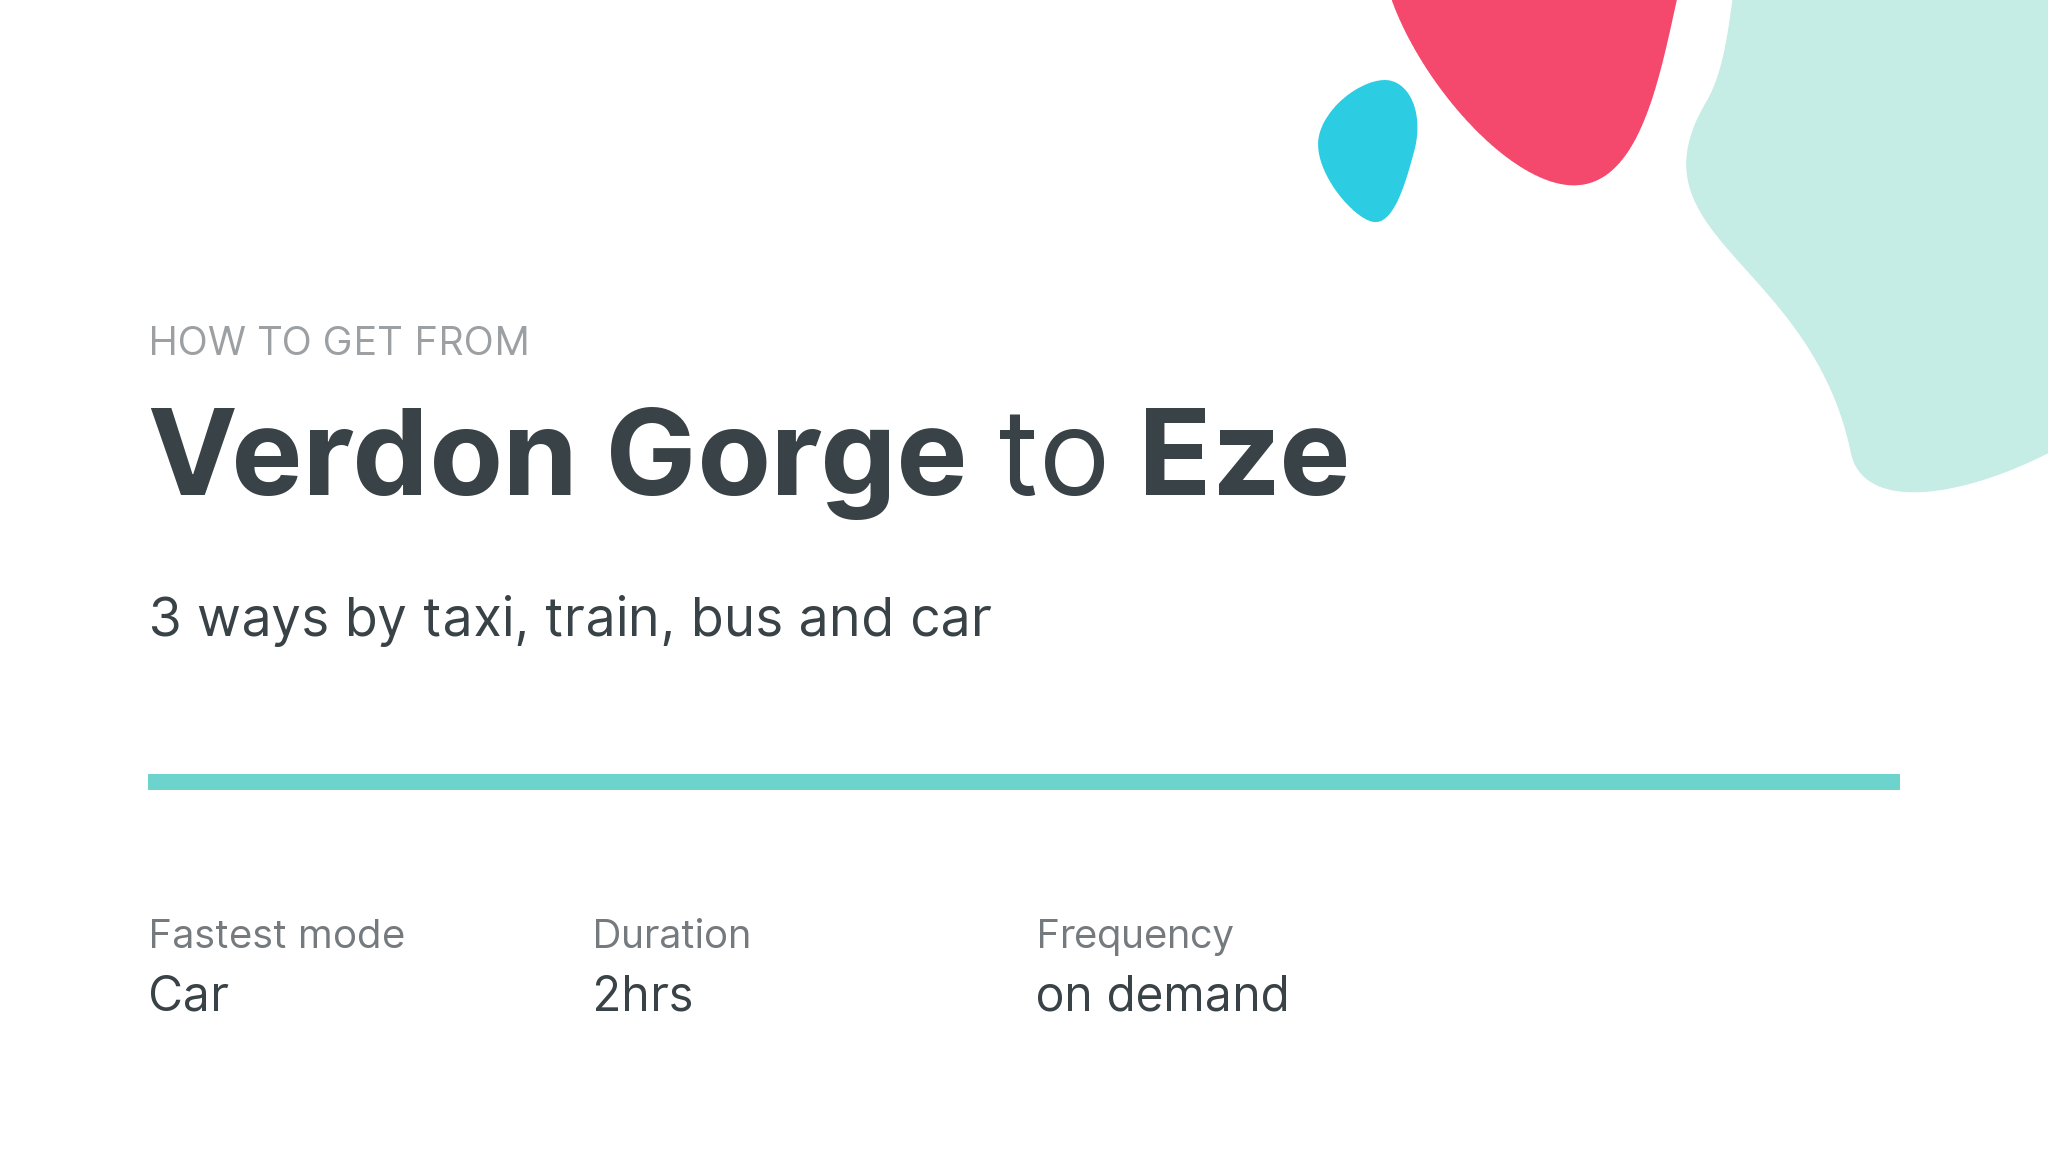 How do I get from Verdon Gorge to Eze